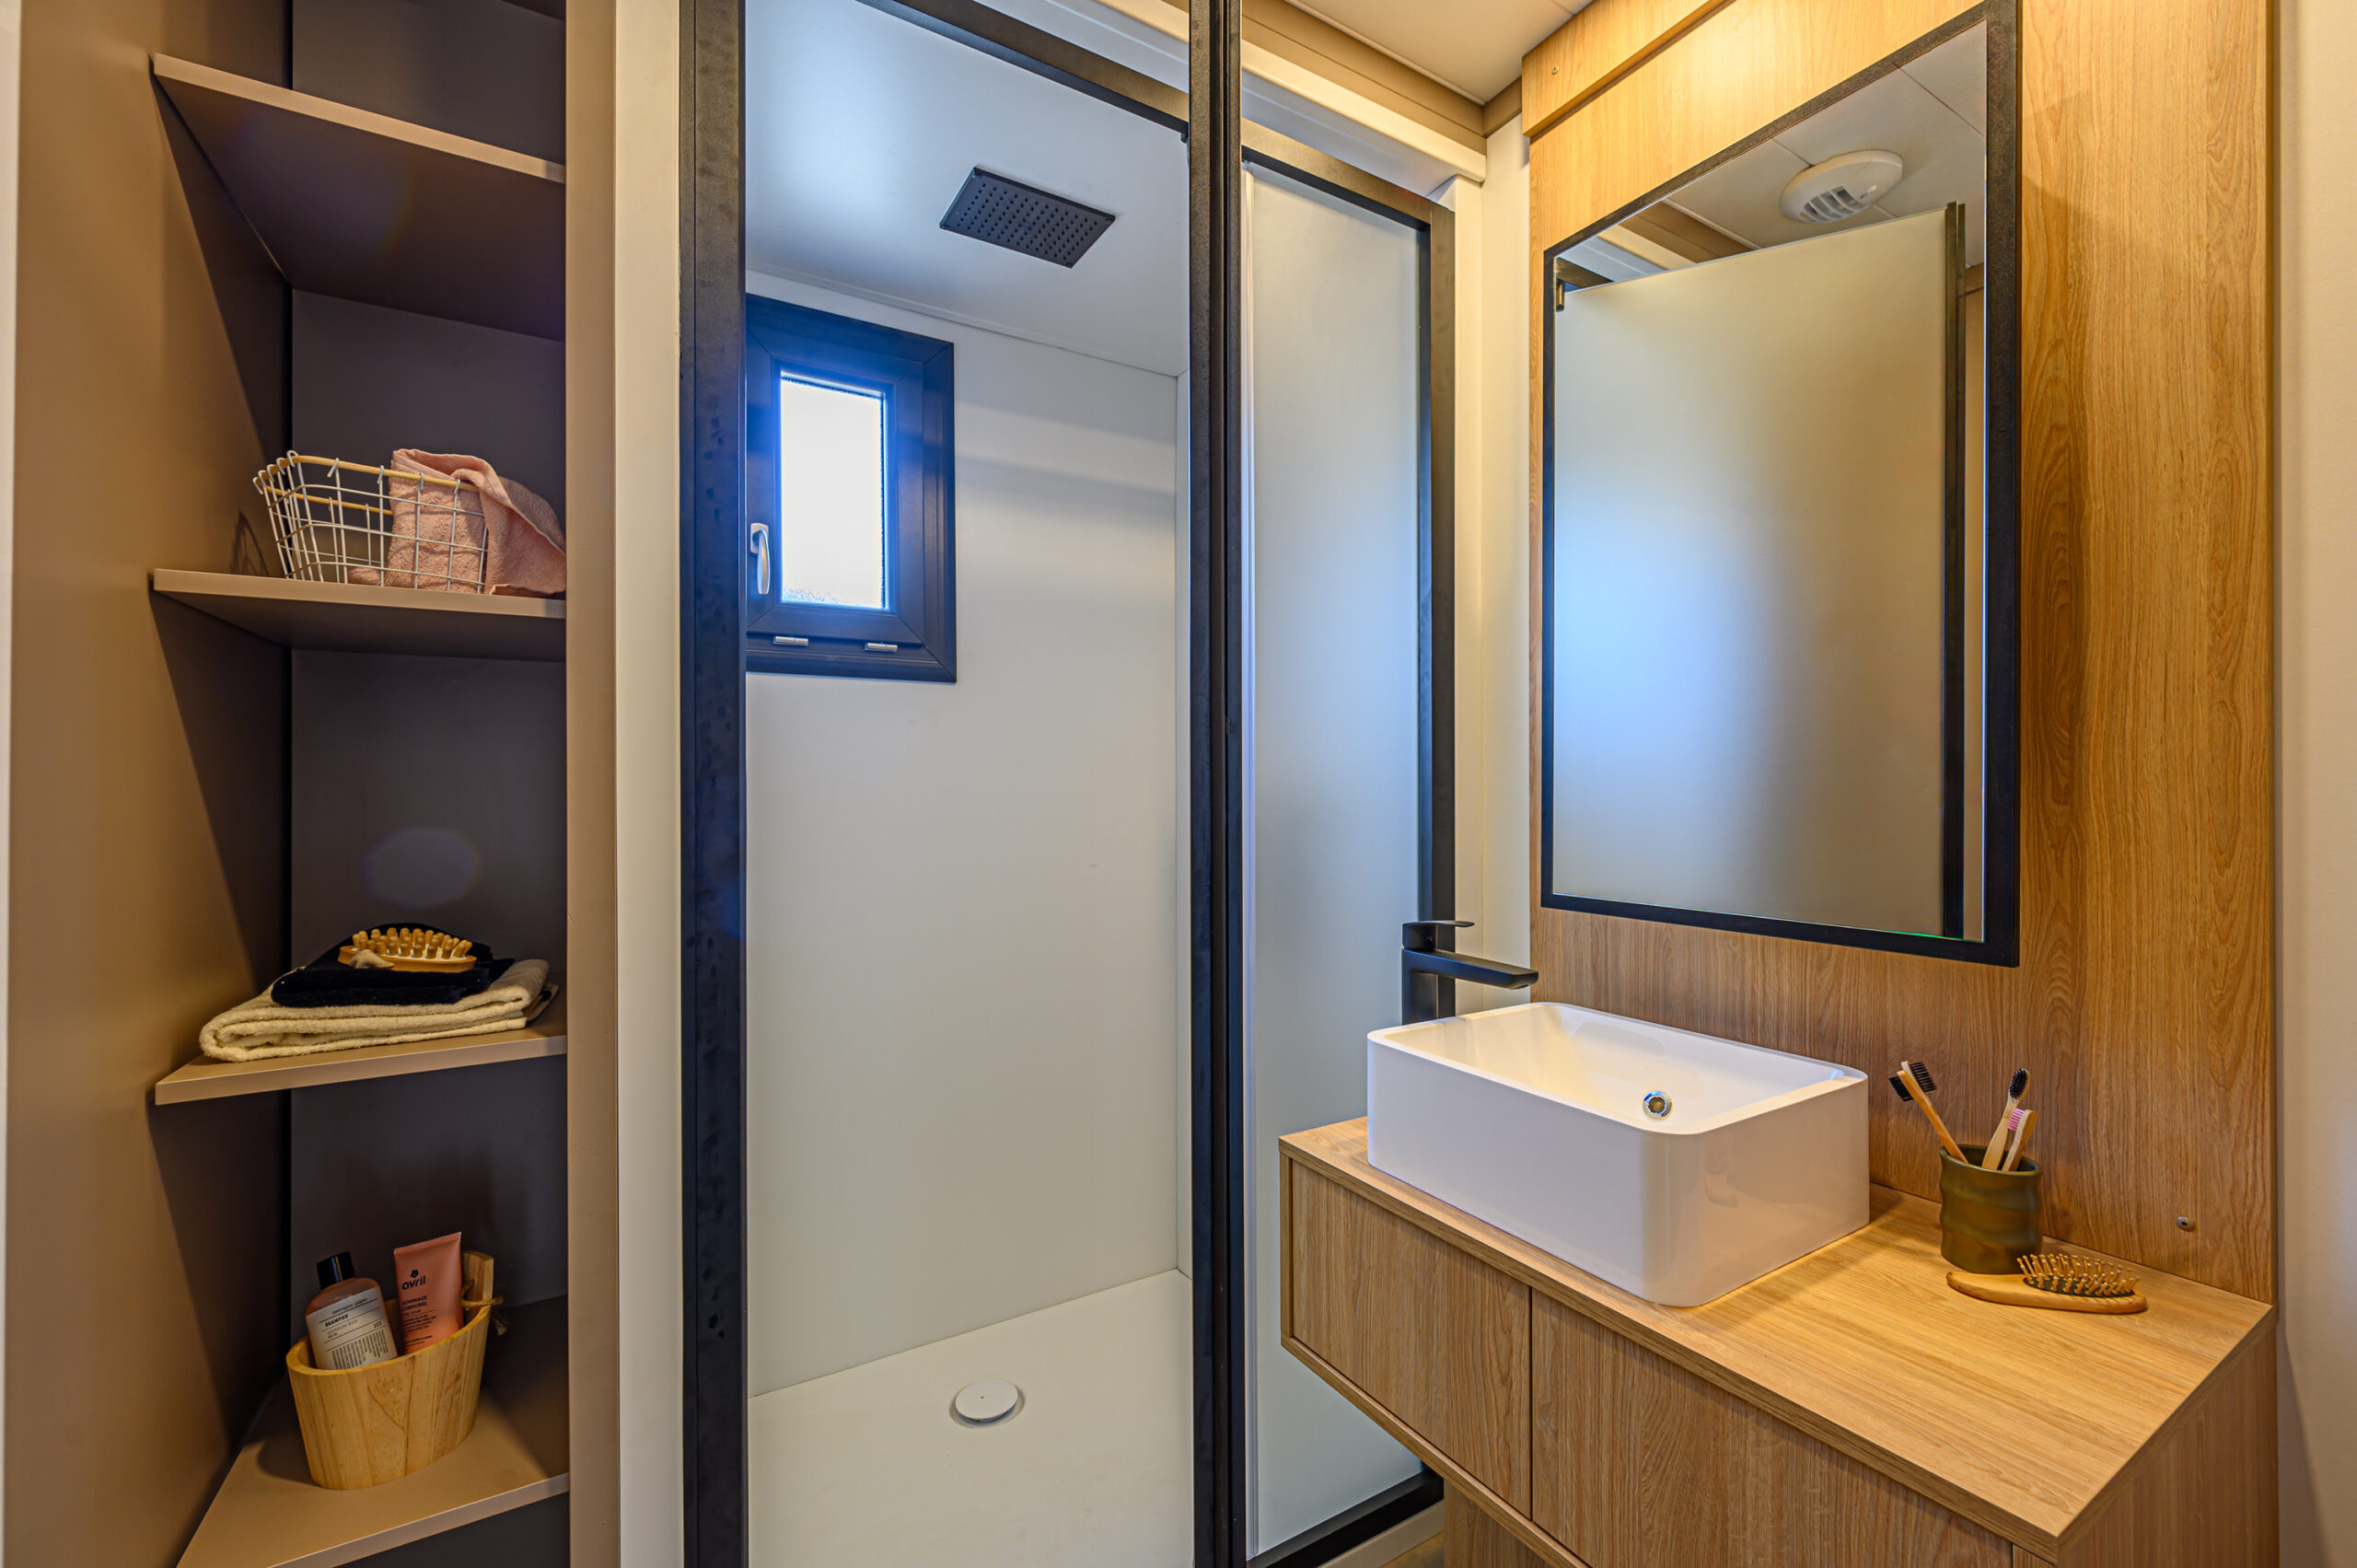 Une salle de bain équipée pour votre séjour à 4 personnes au Pays Basque